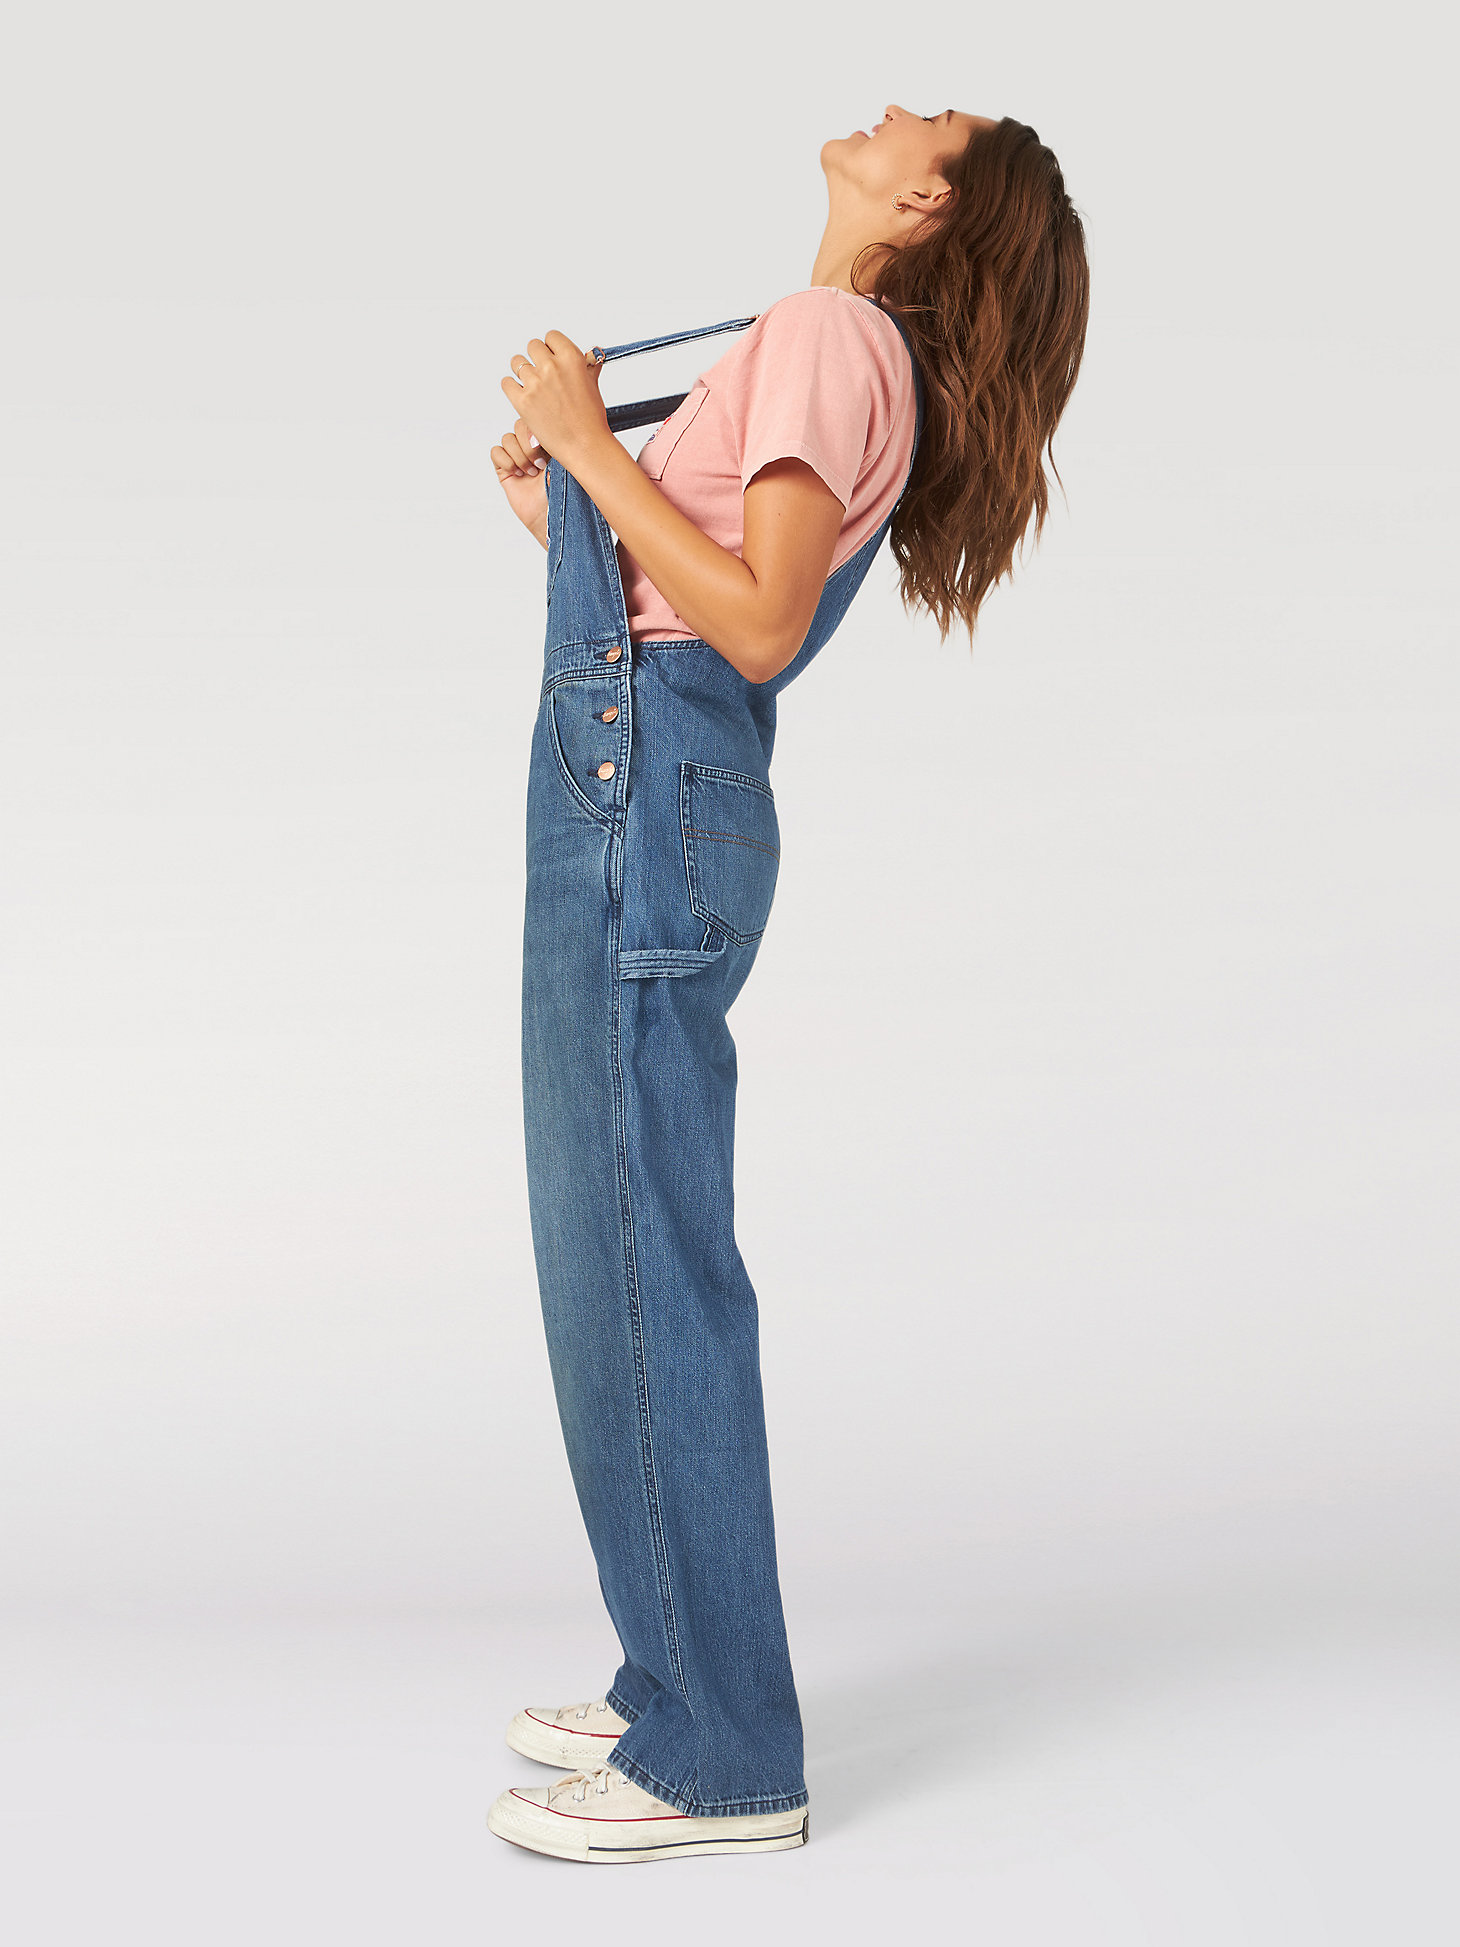 S/M/L/XL Women's Chain Shoulder Denim Jeans Jumpsuit Overall 